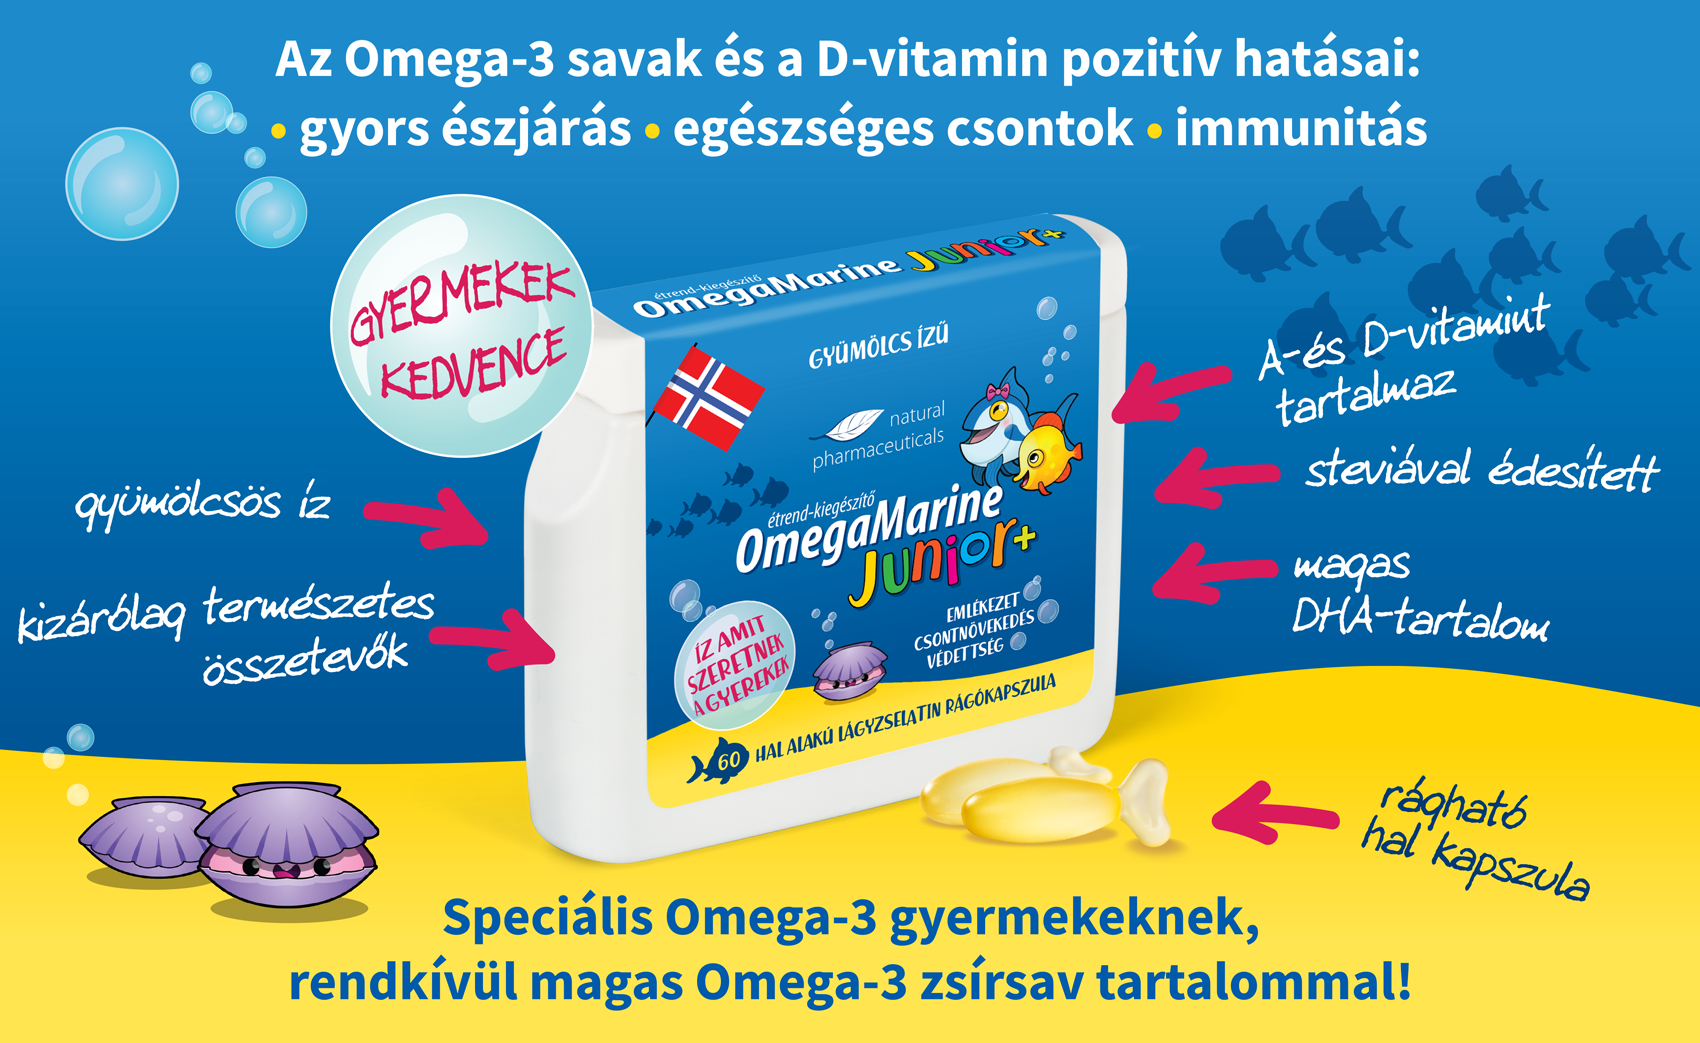 Az Omega-3 savak és a D-vitamin pozitív hatásai